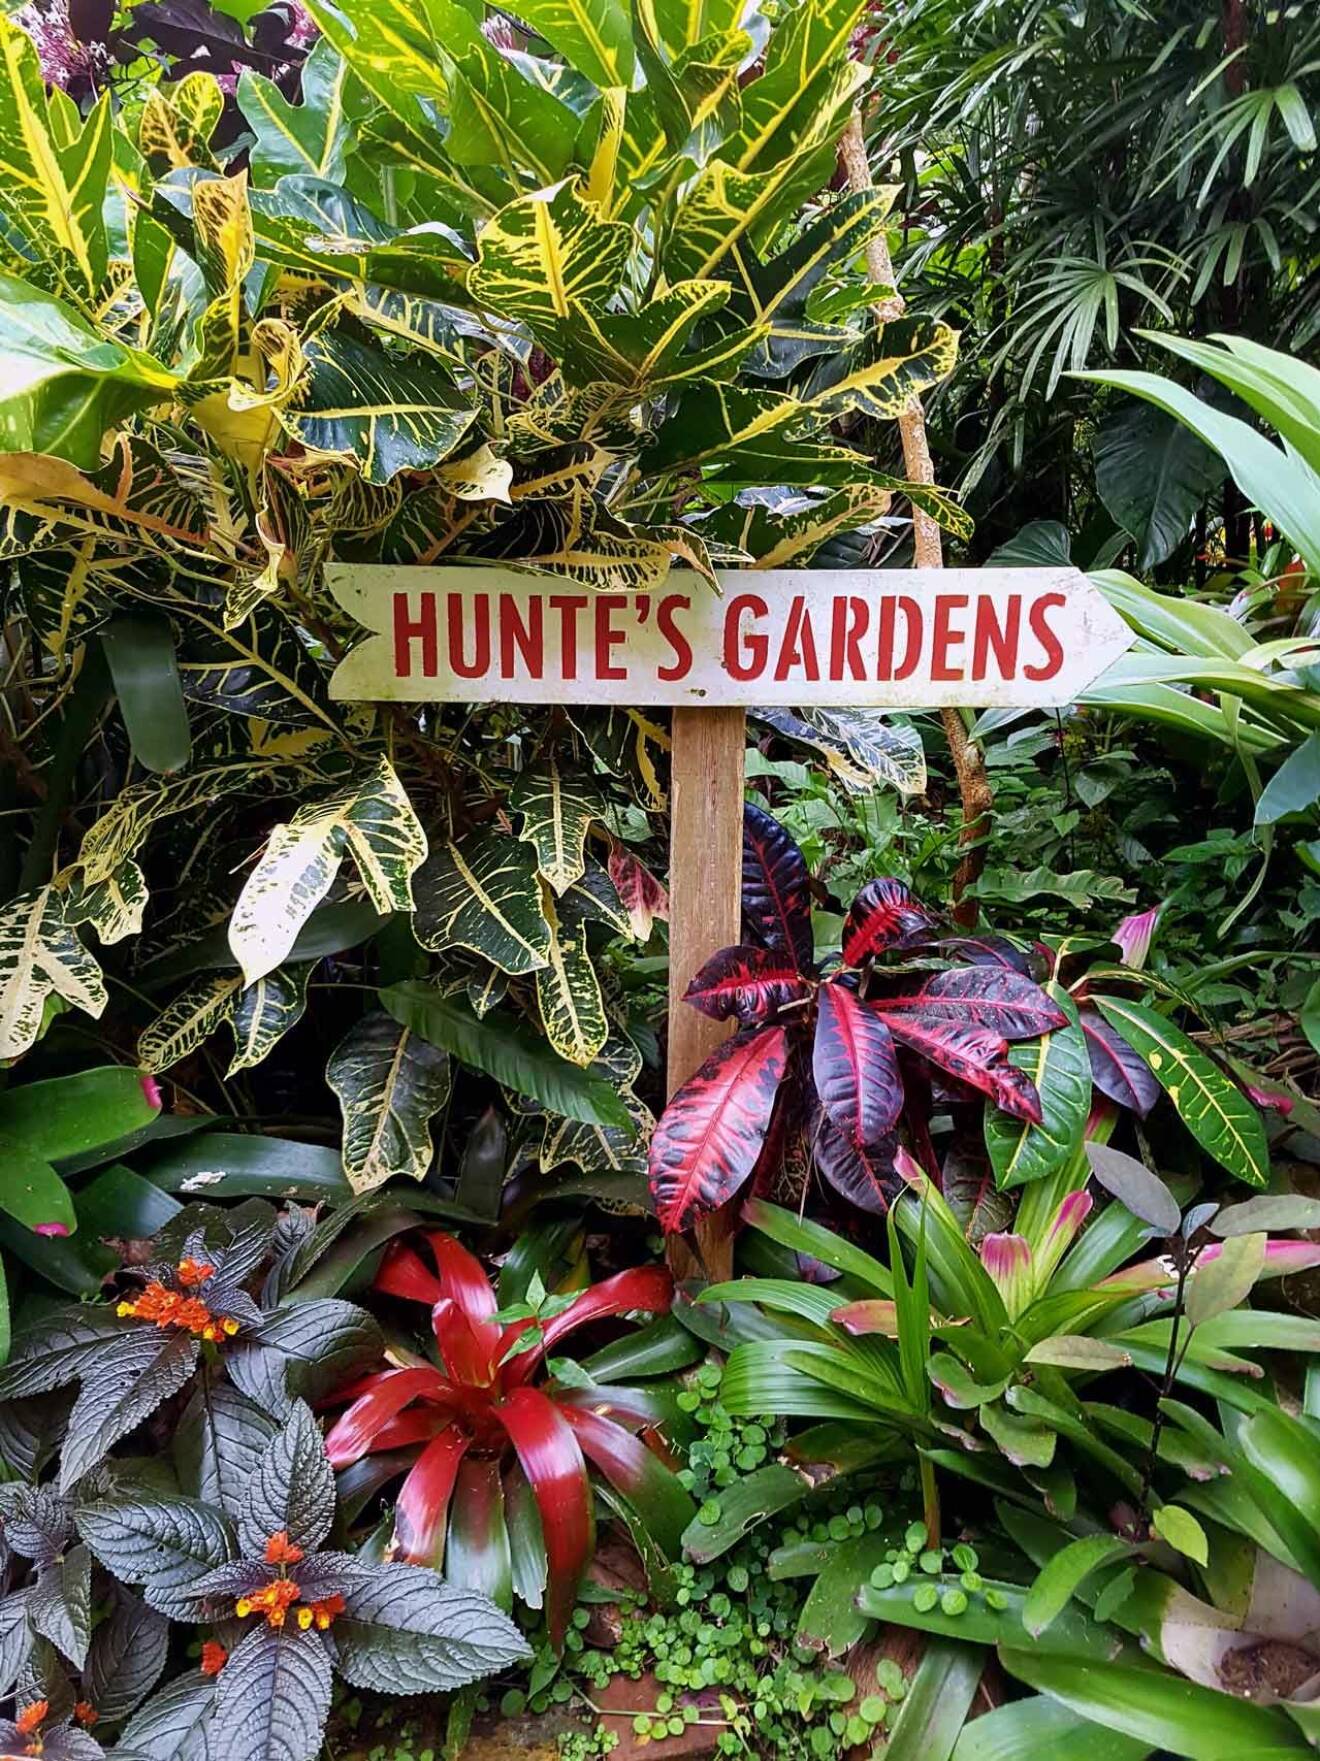 Den fantastiska naturen och alla blomsterträdgårdar är något Alexandra tycker mycket om. Här Huntes Gardens.